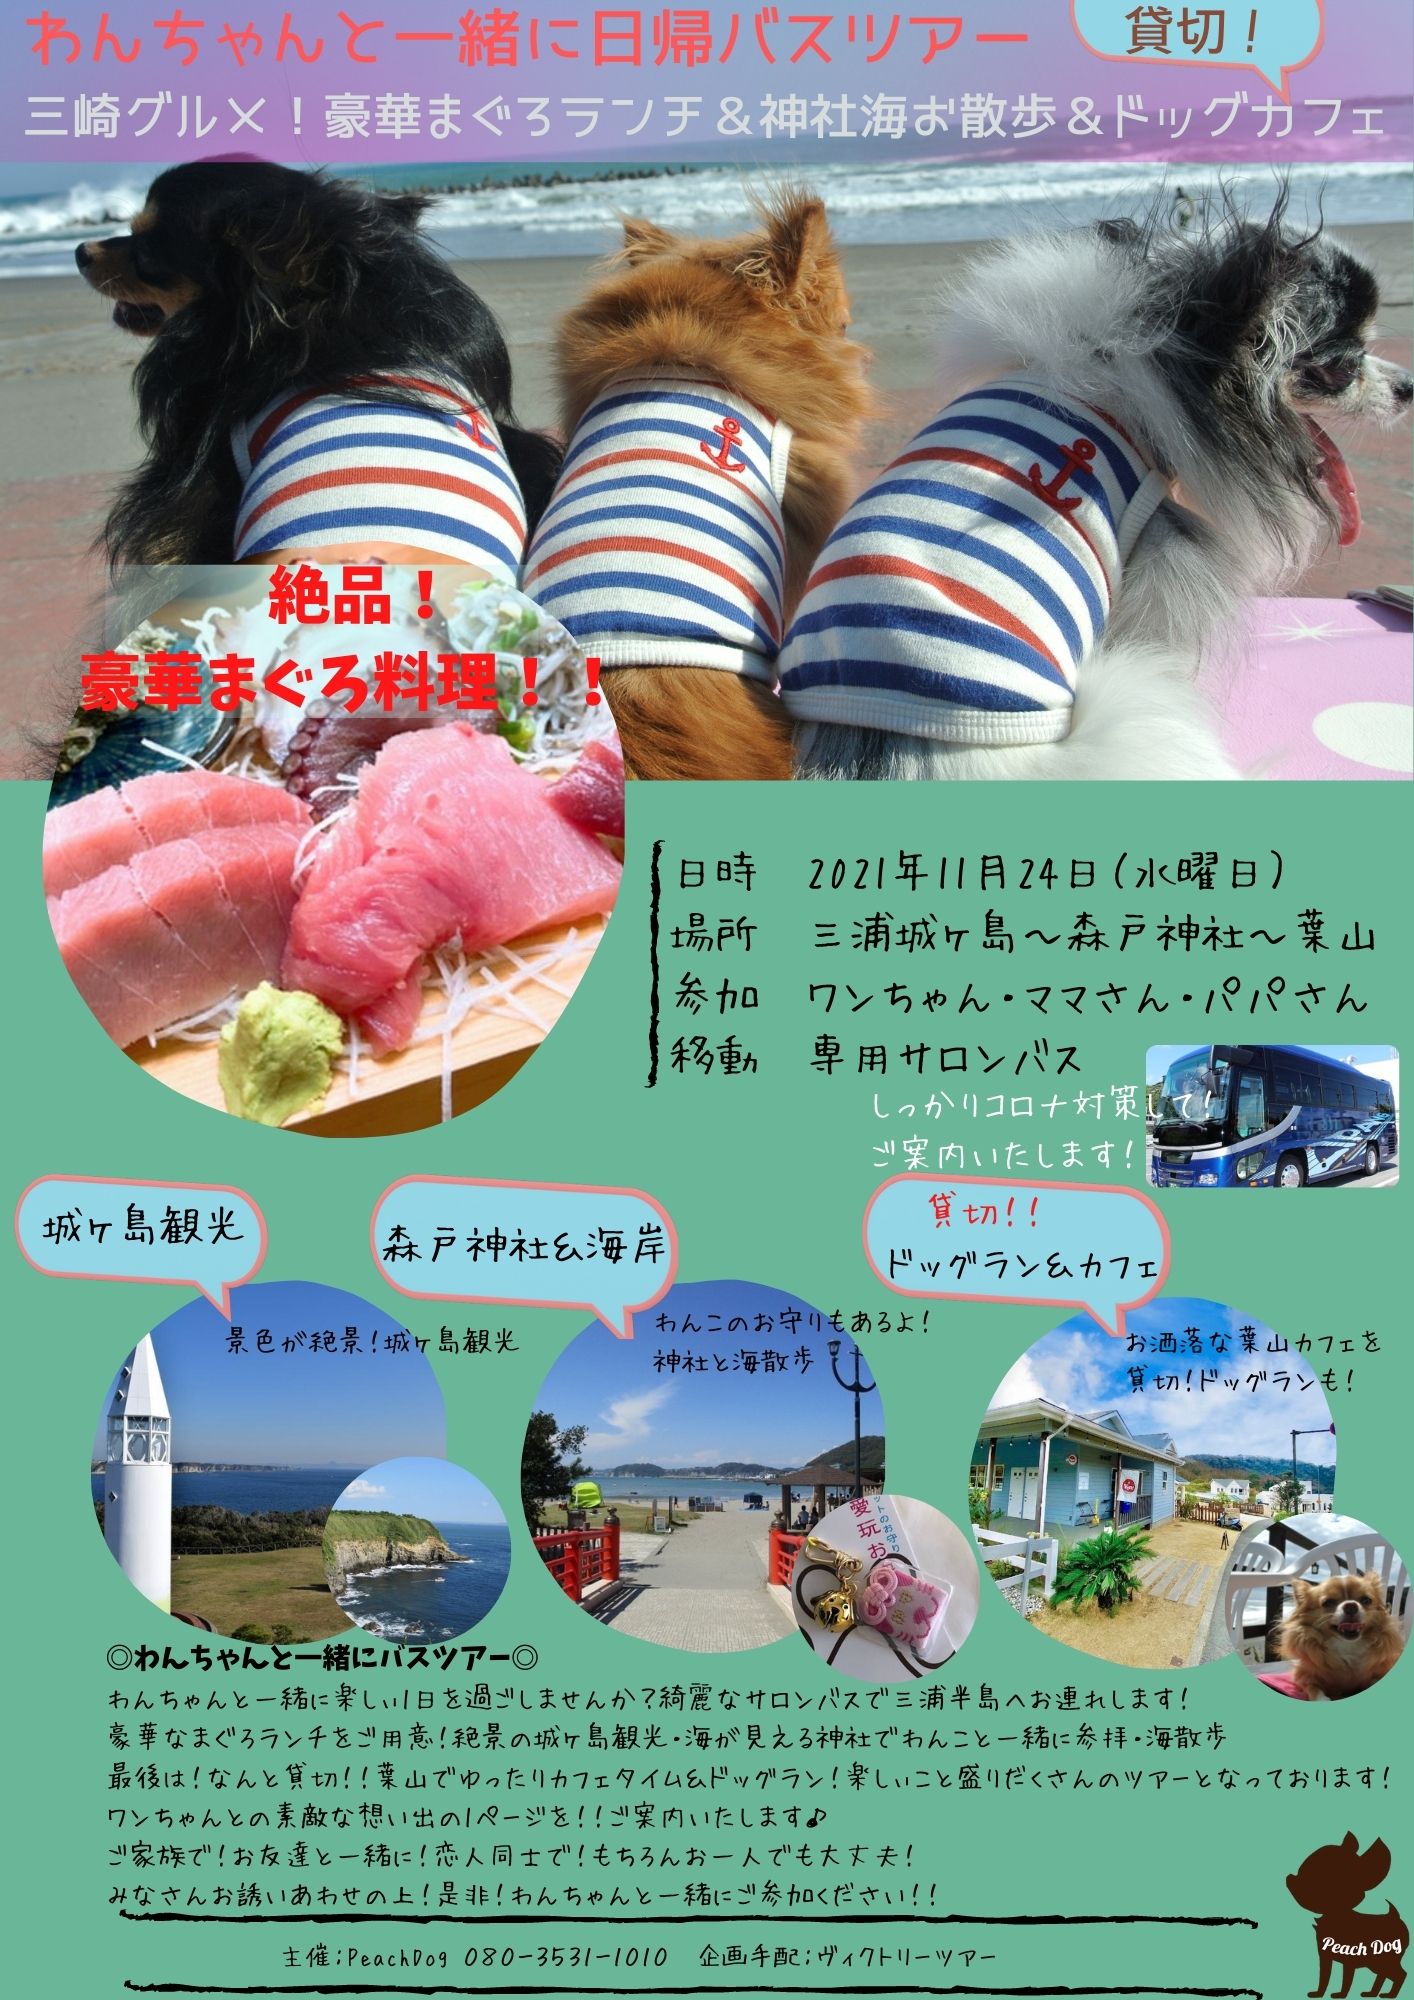 わんことバスツアー 大田区蒲田トリミングサロンpeach Dog21 11 Peachdog